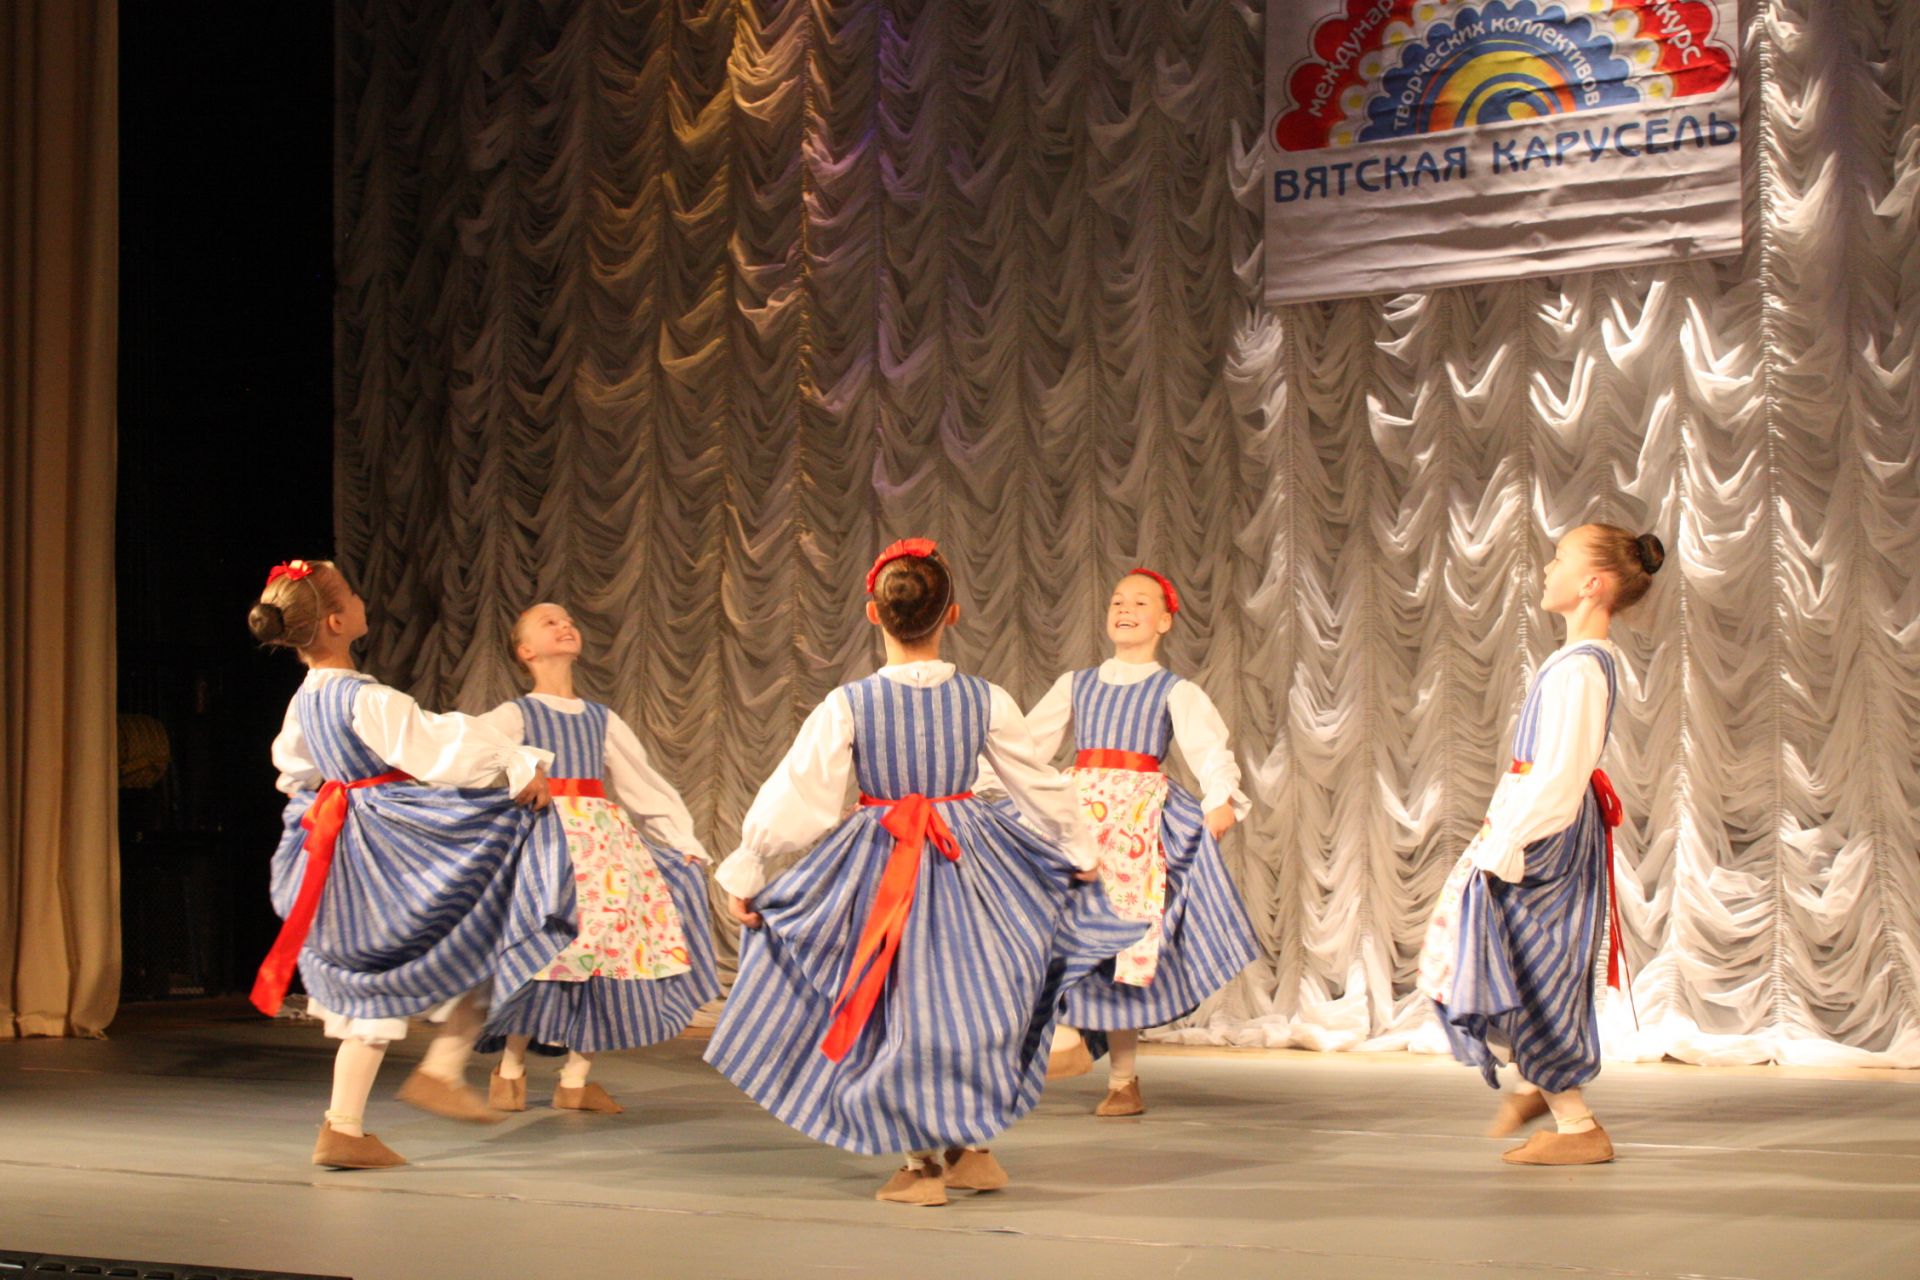 "Танцевальная деревня" в Чистополе (Открытие)